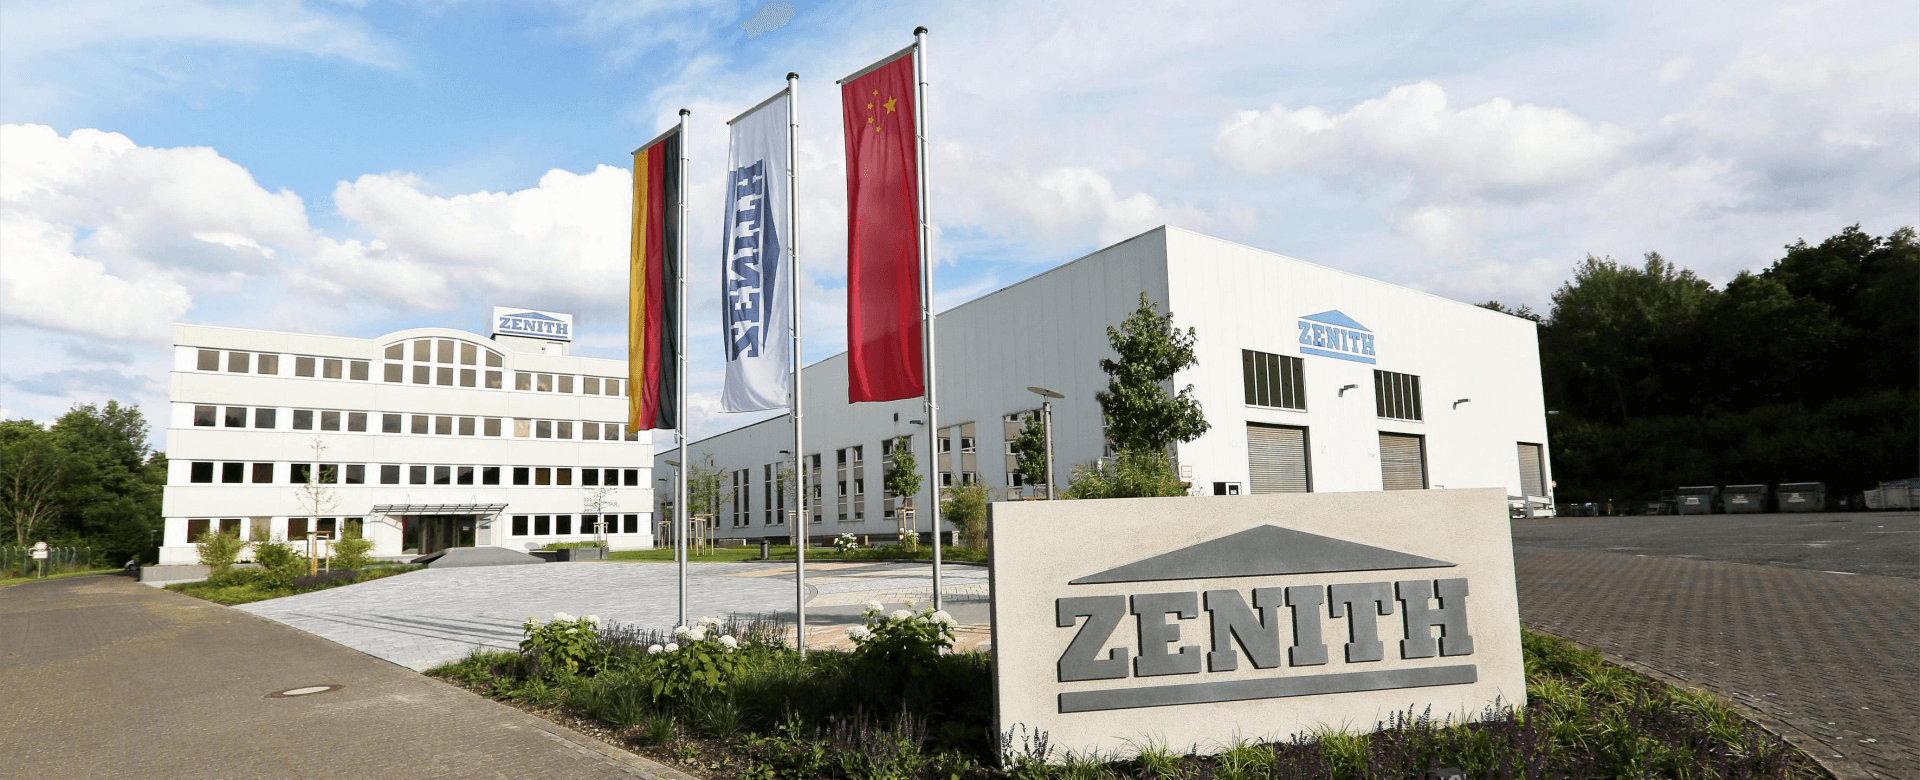 ZENITH Maschinenfabrik GmbH